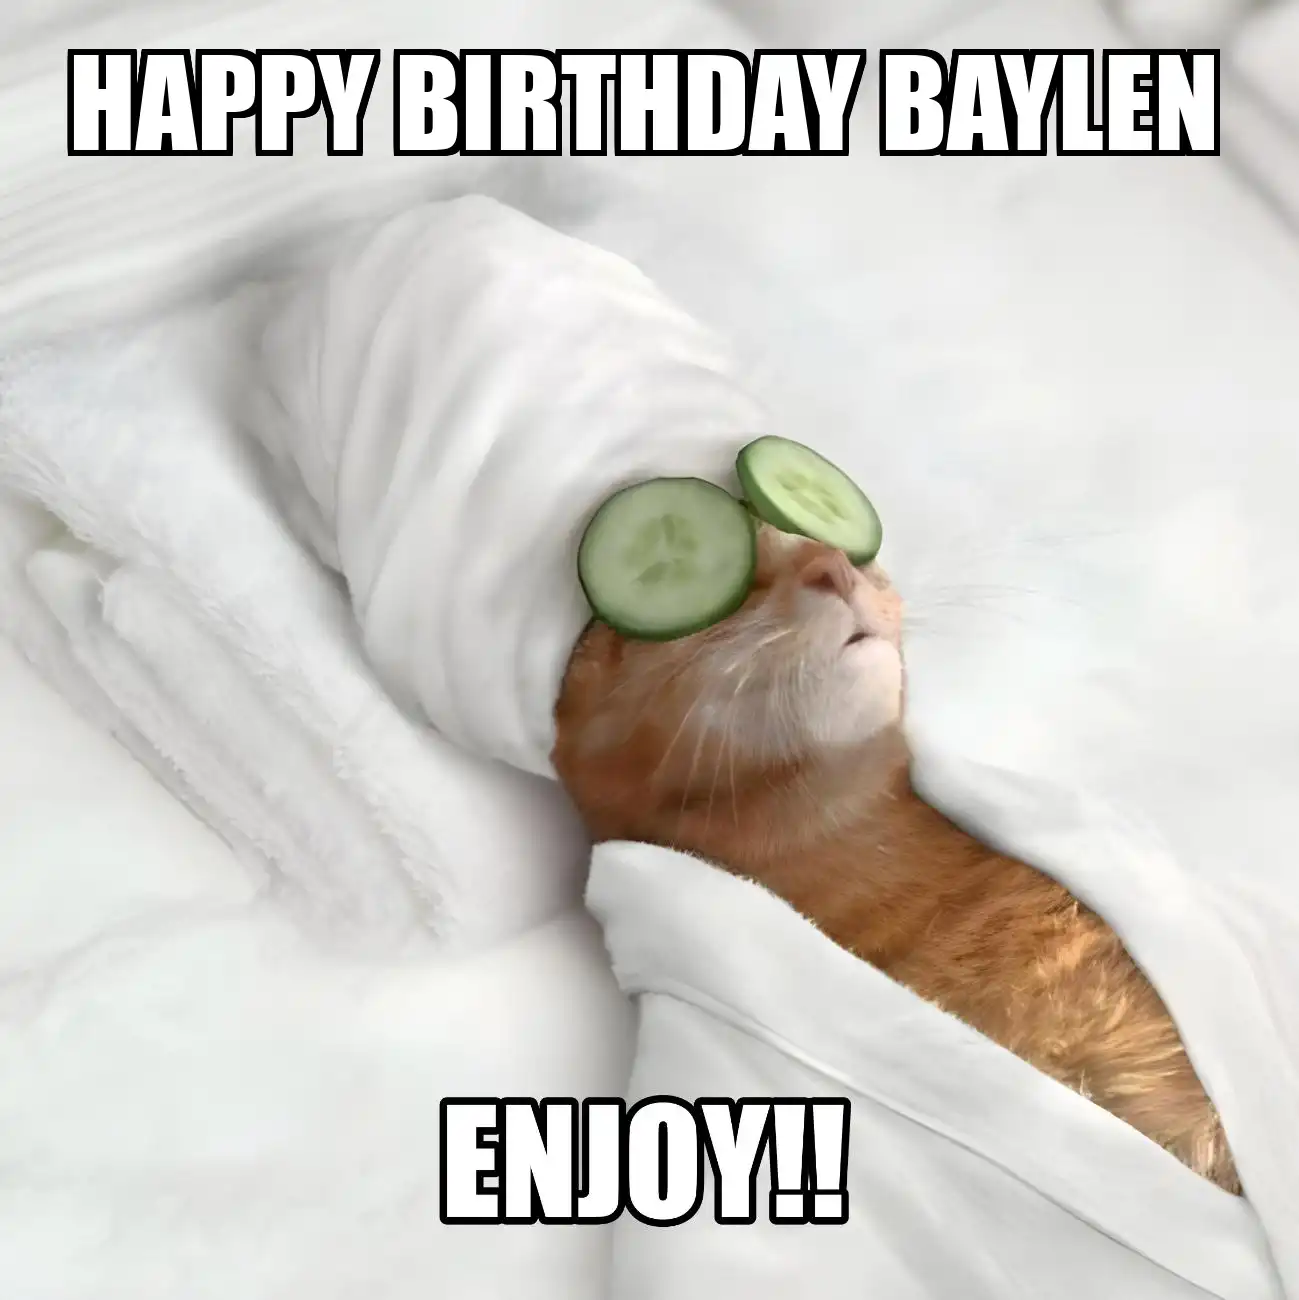 Happy Birthday Baylen Enjoy Cat Meme